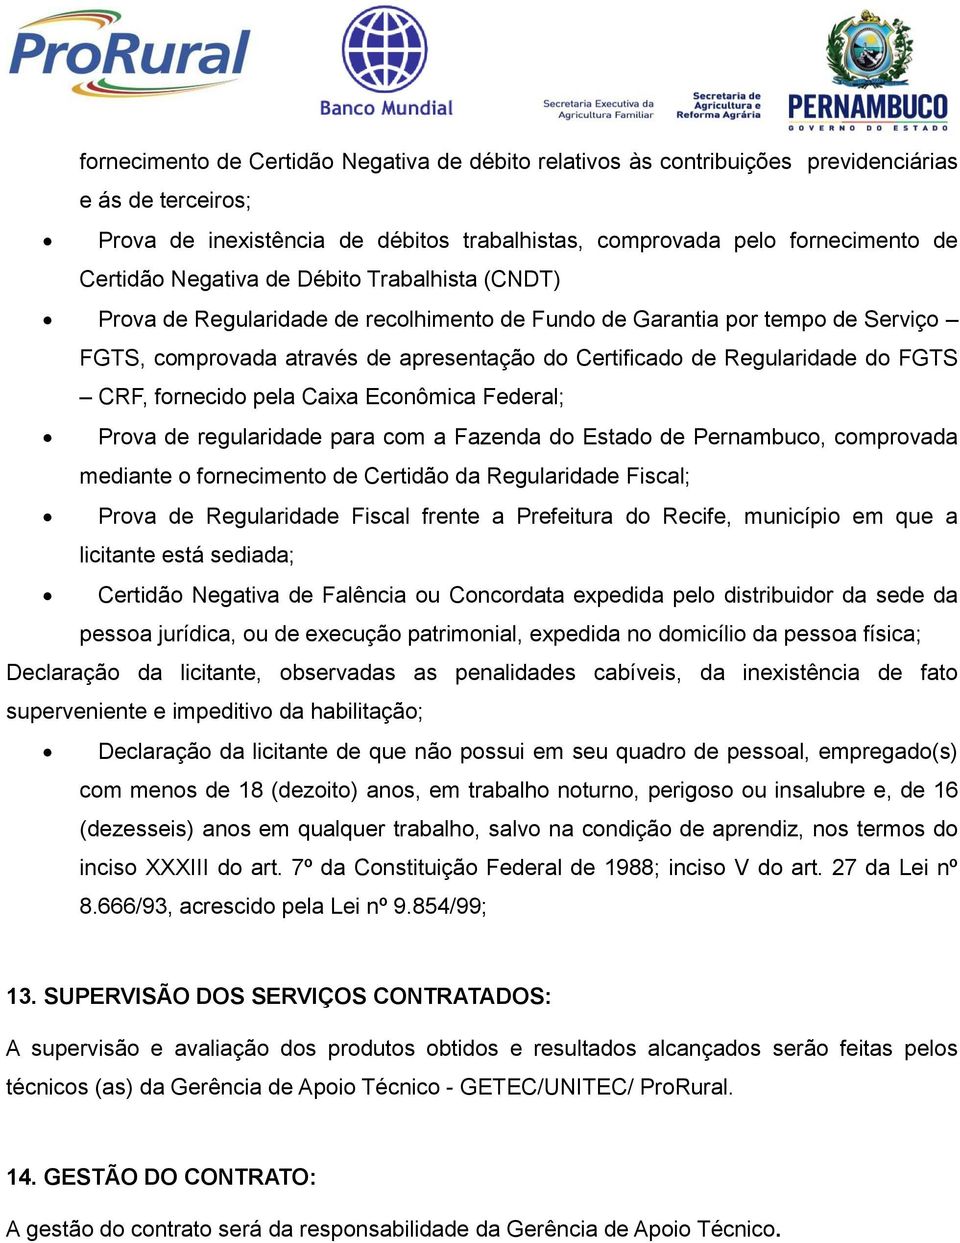 CRF, fornecido pela Caixa Econômica Federal; Prova de regularidade para com a Fazenda do Estado de Pernambuco, comprovada mediante o fornecimento de Certidão da Regularidade Fiscal; Prova de